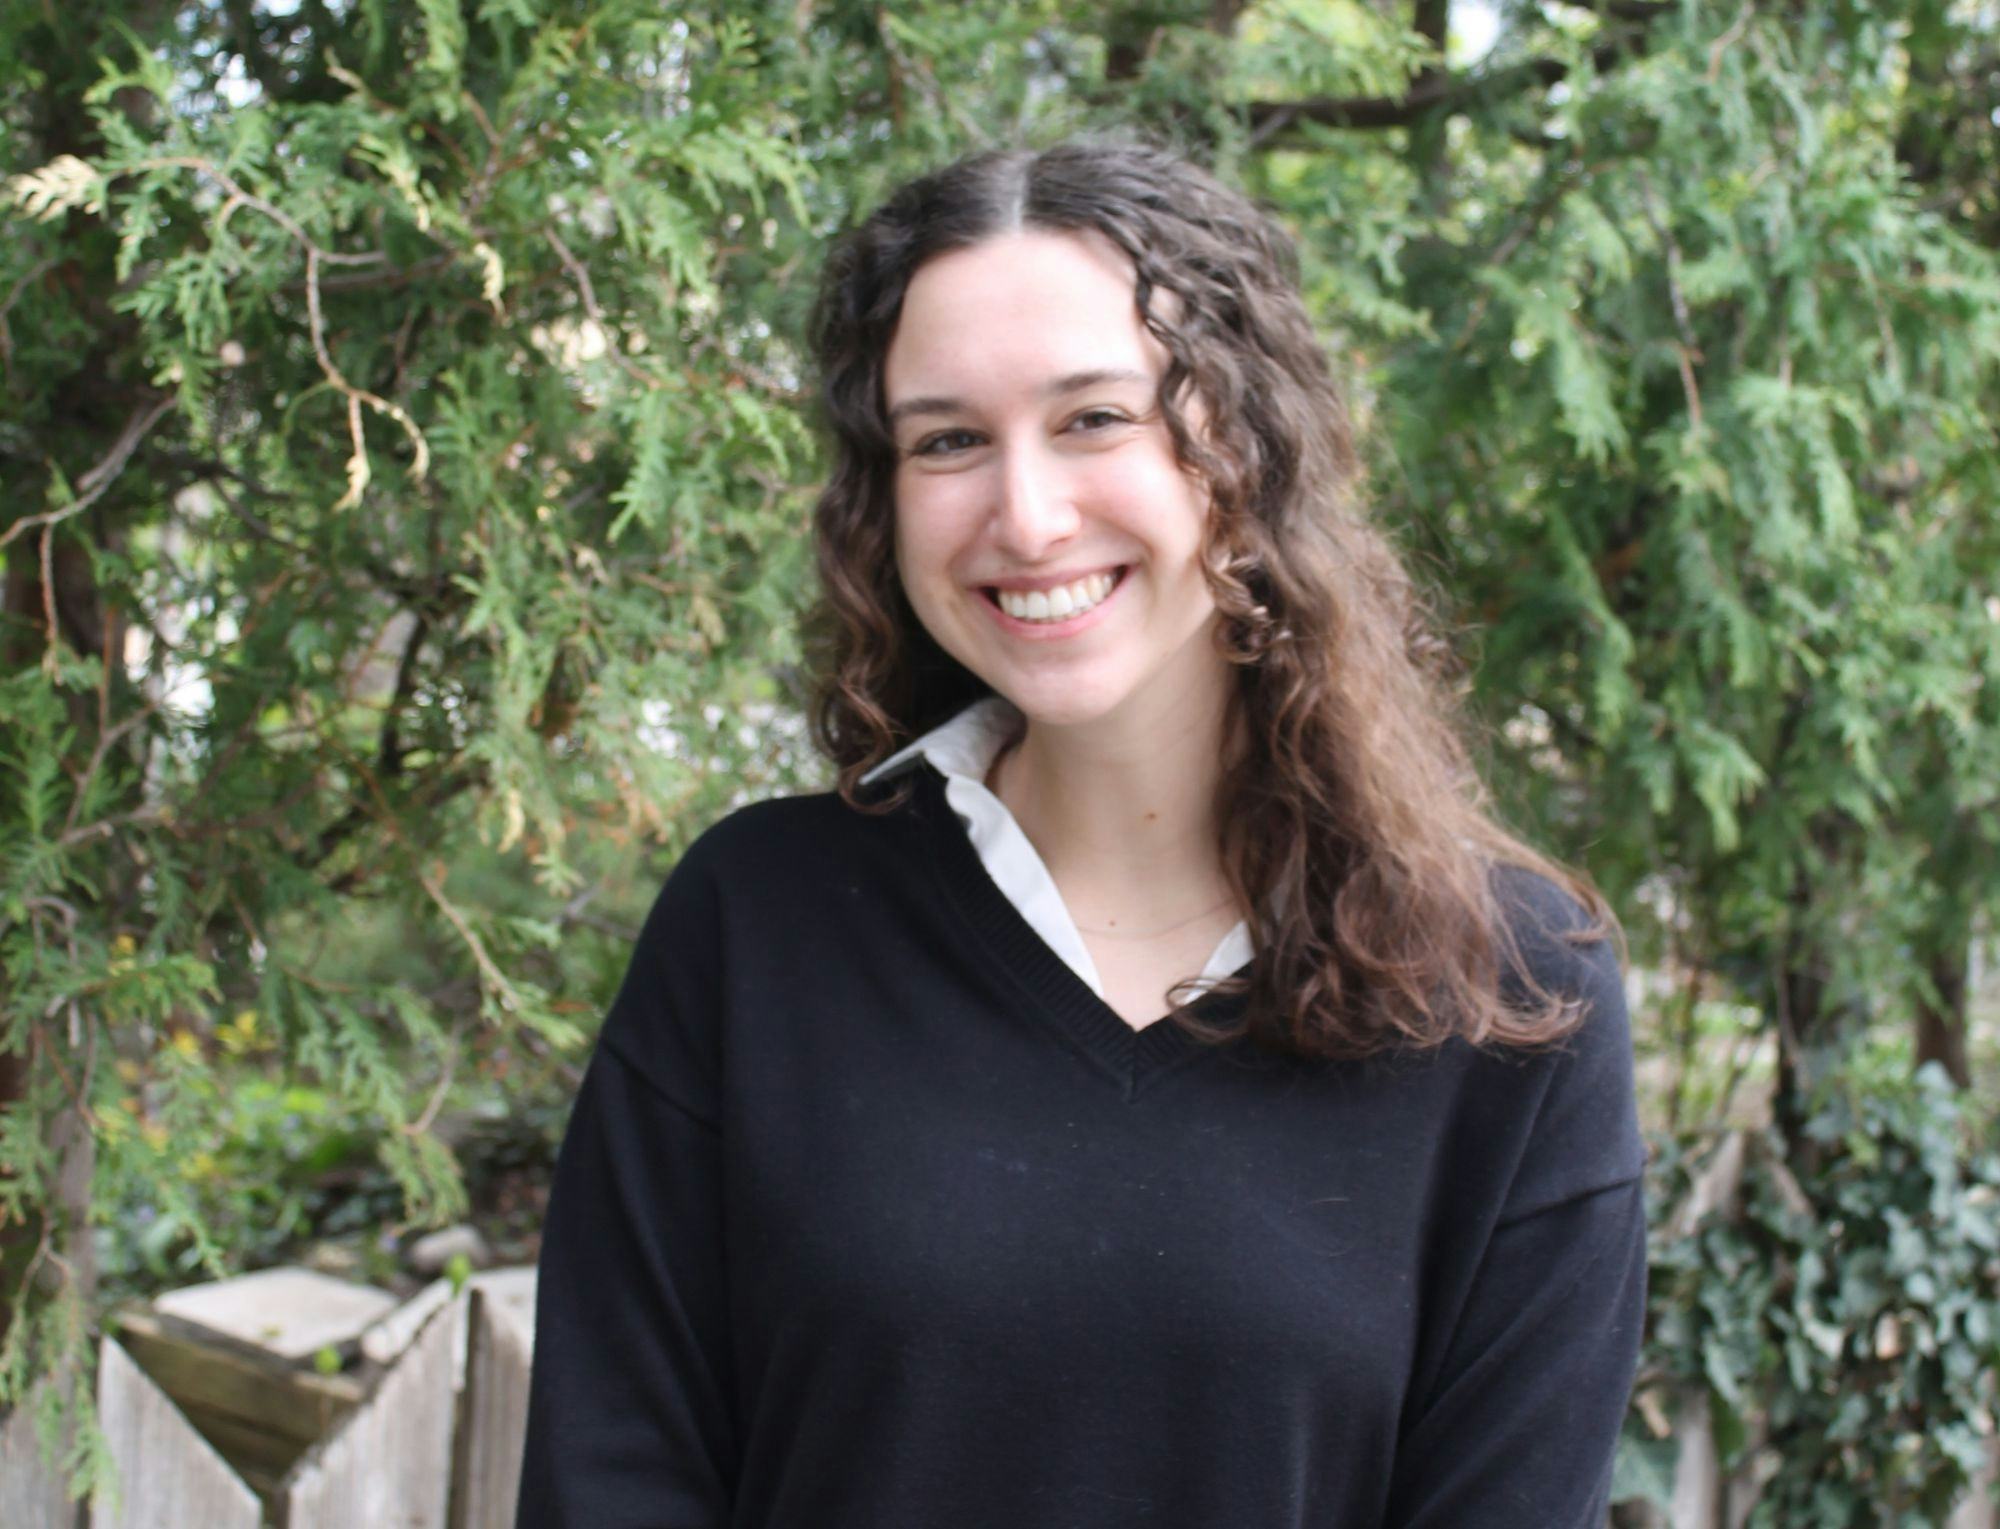 Meet the IJF: News Applications Developer Lindsay Katz